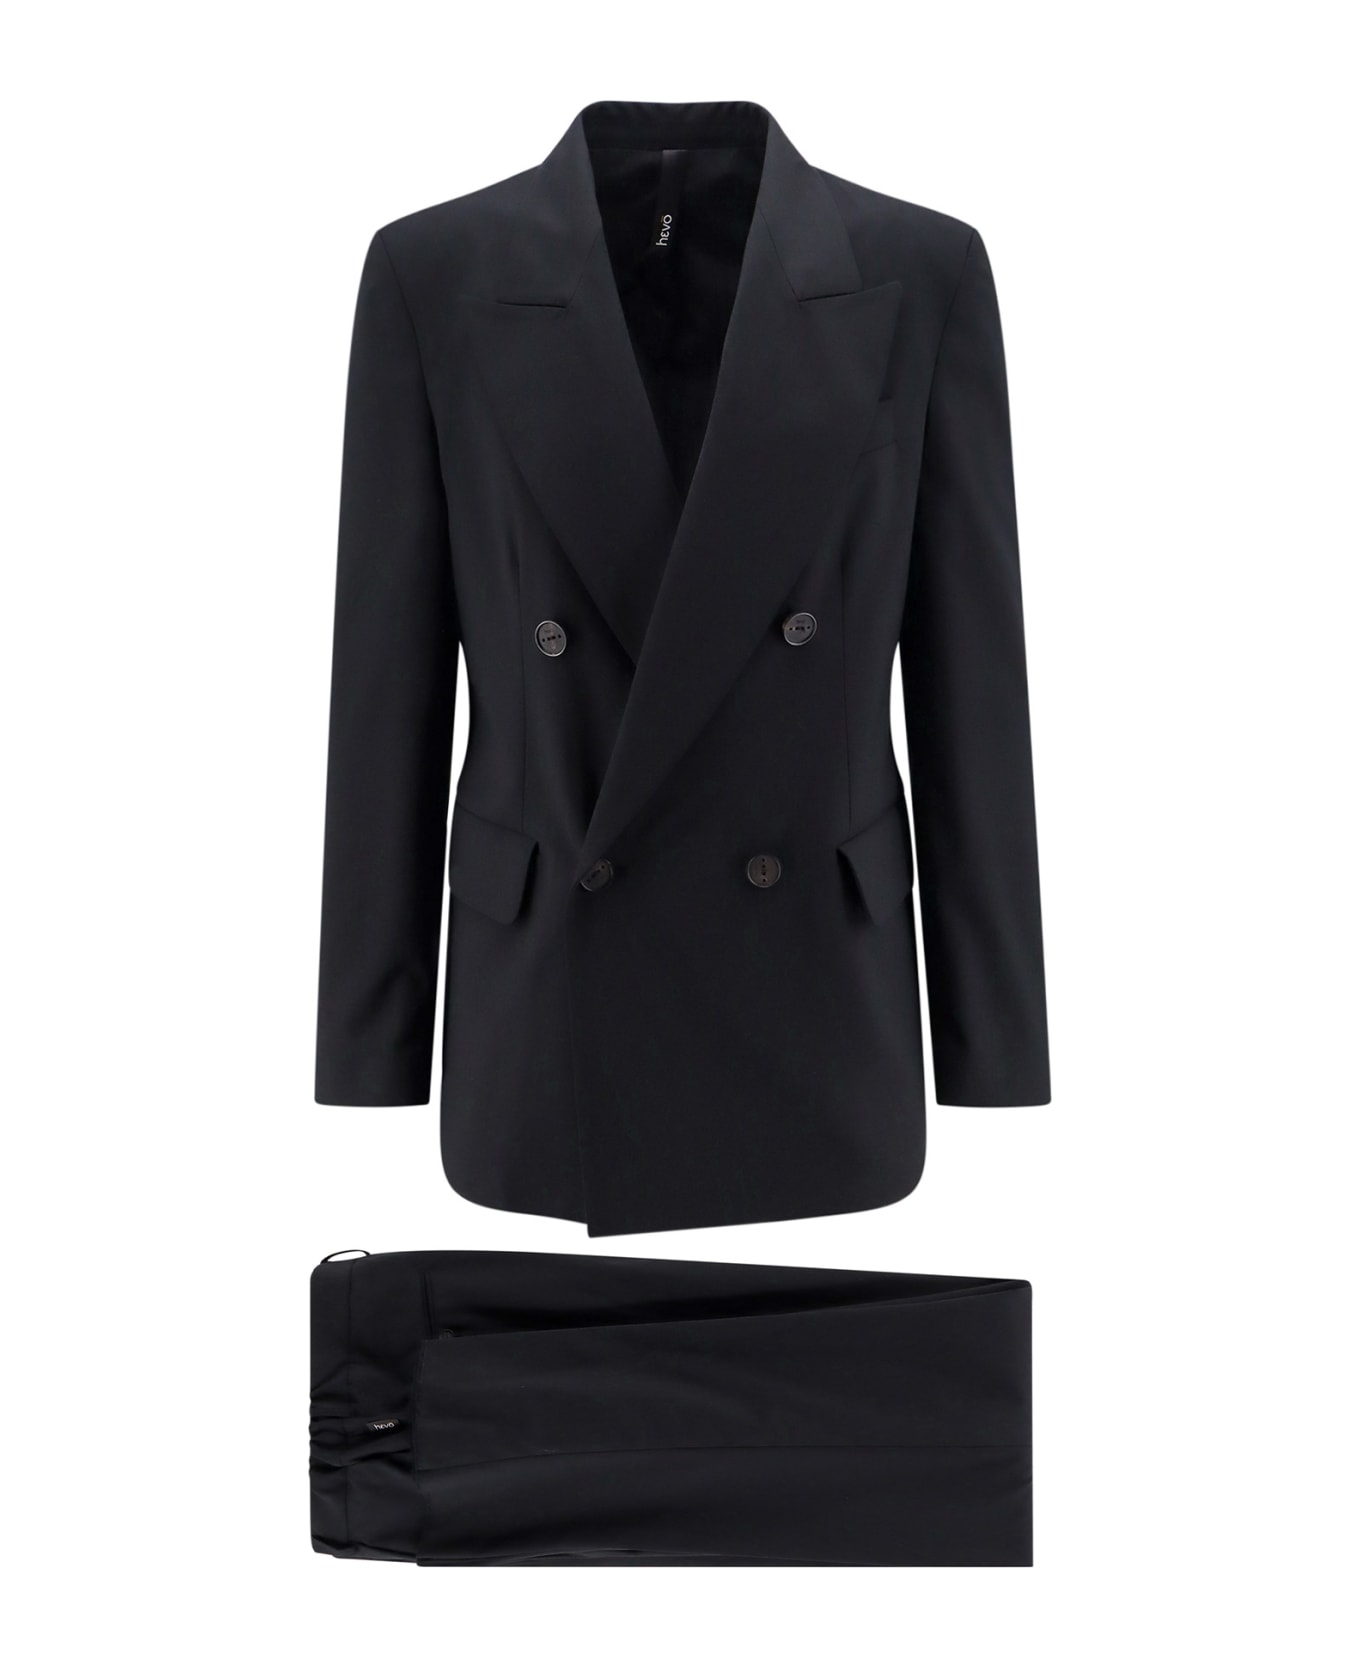 Hevò Suit - Black